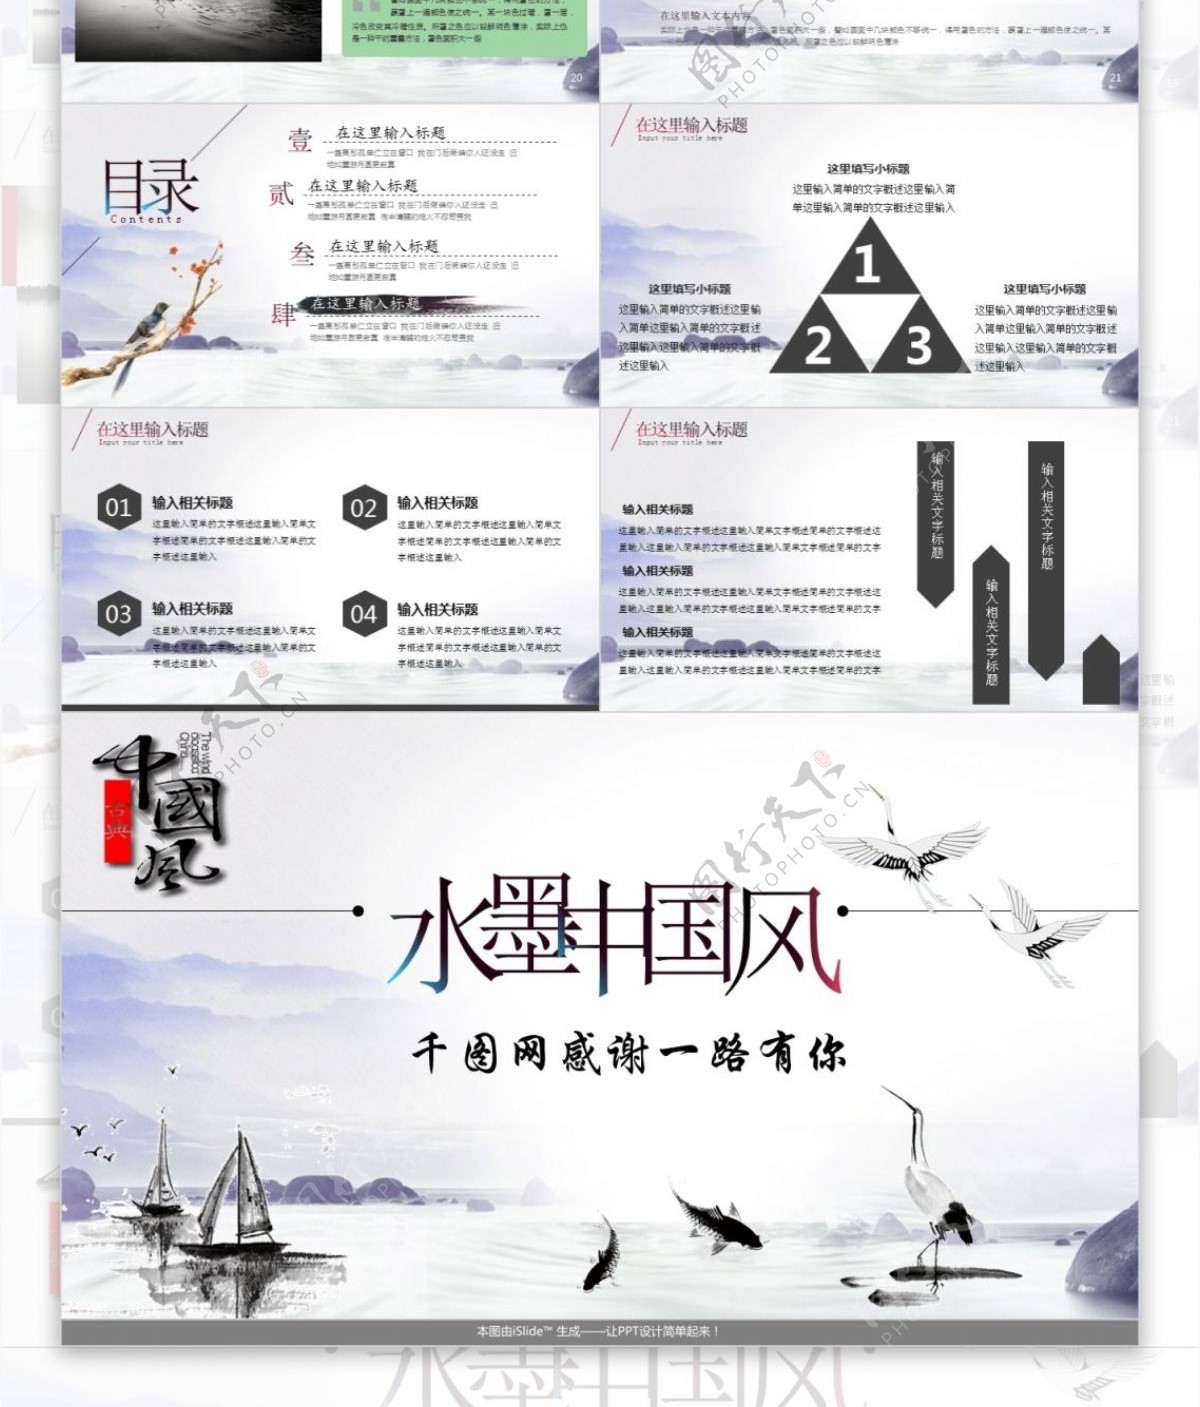 黑白中国风水墨图书行业工作汇报通用PPT